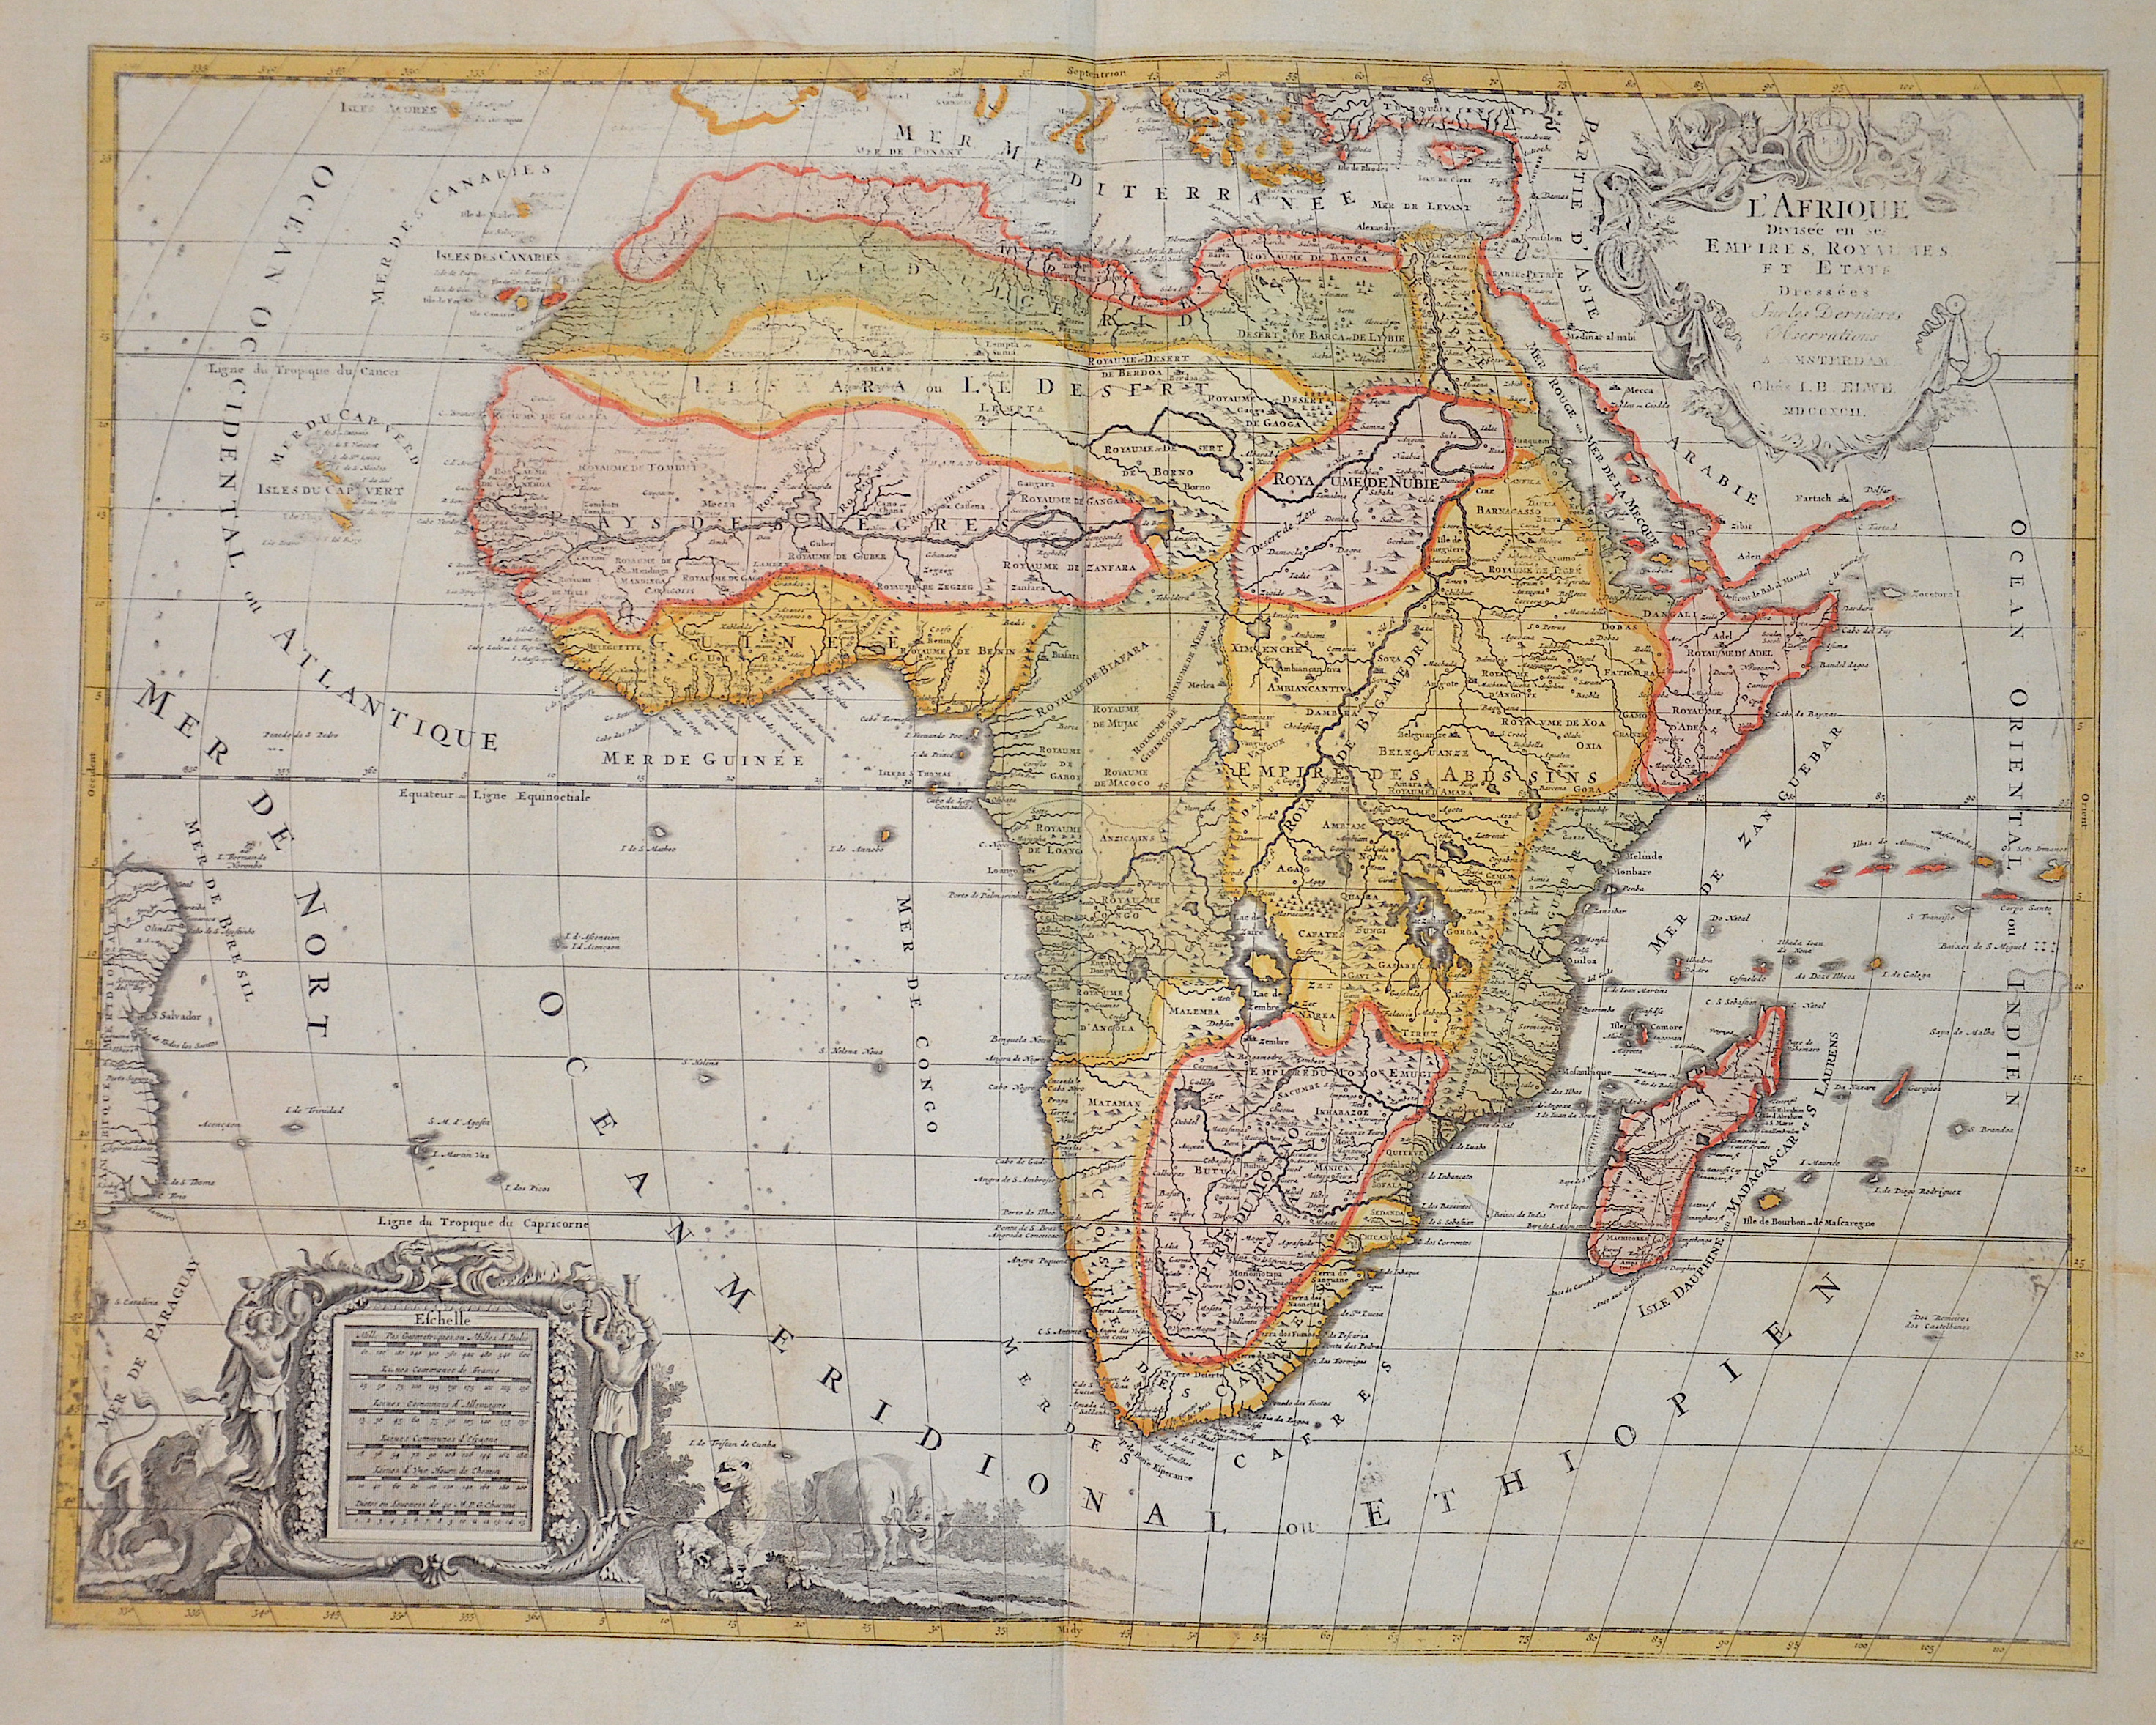 Elwe Jan Barend L’Afrique Divisee en ses Empires, Royaumes, et Etats Dressees